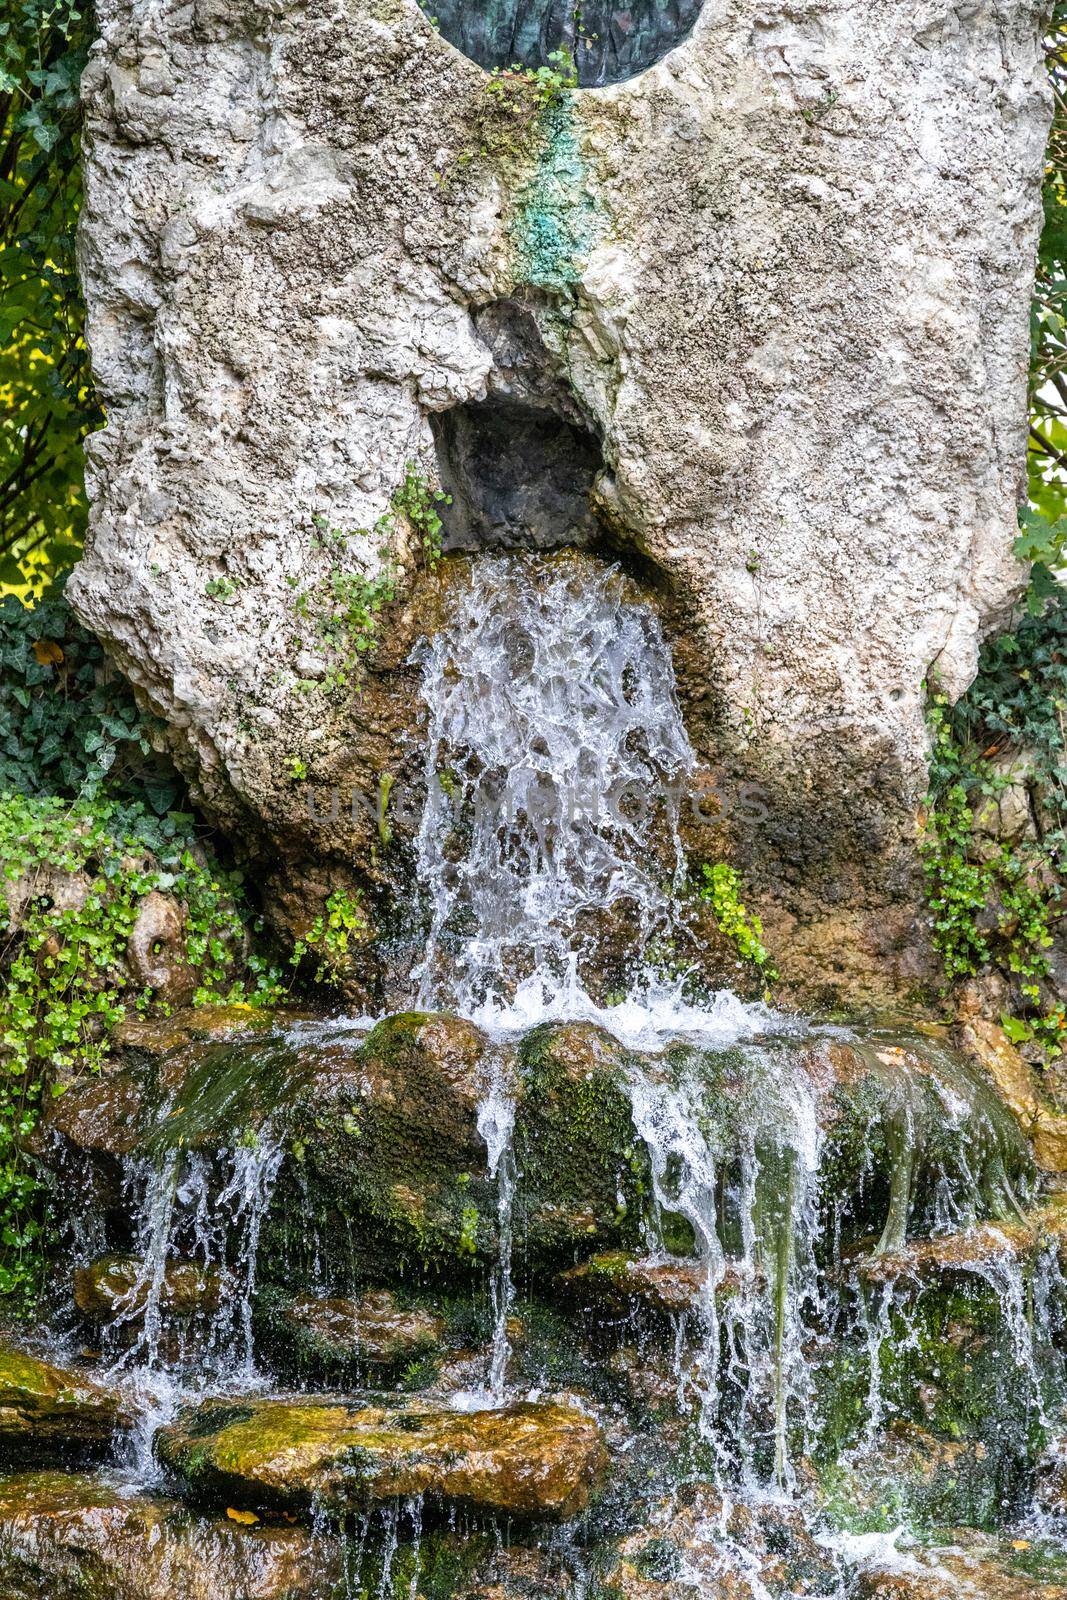 Fountain with splashing water at Danube Gate (Donautor) in the city Kelheim, Bavaria, Germany